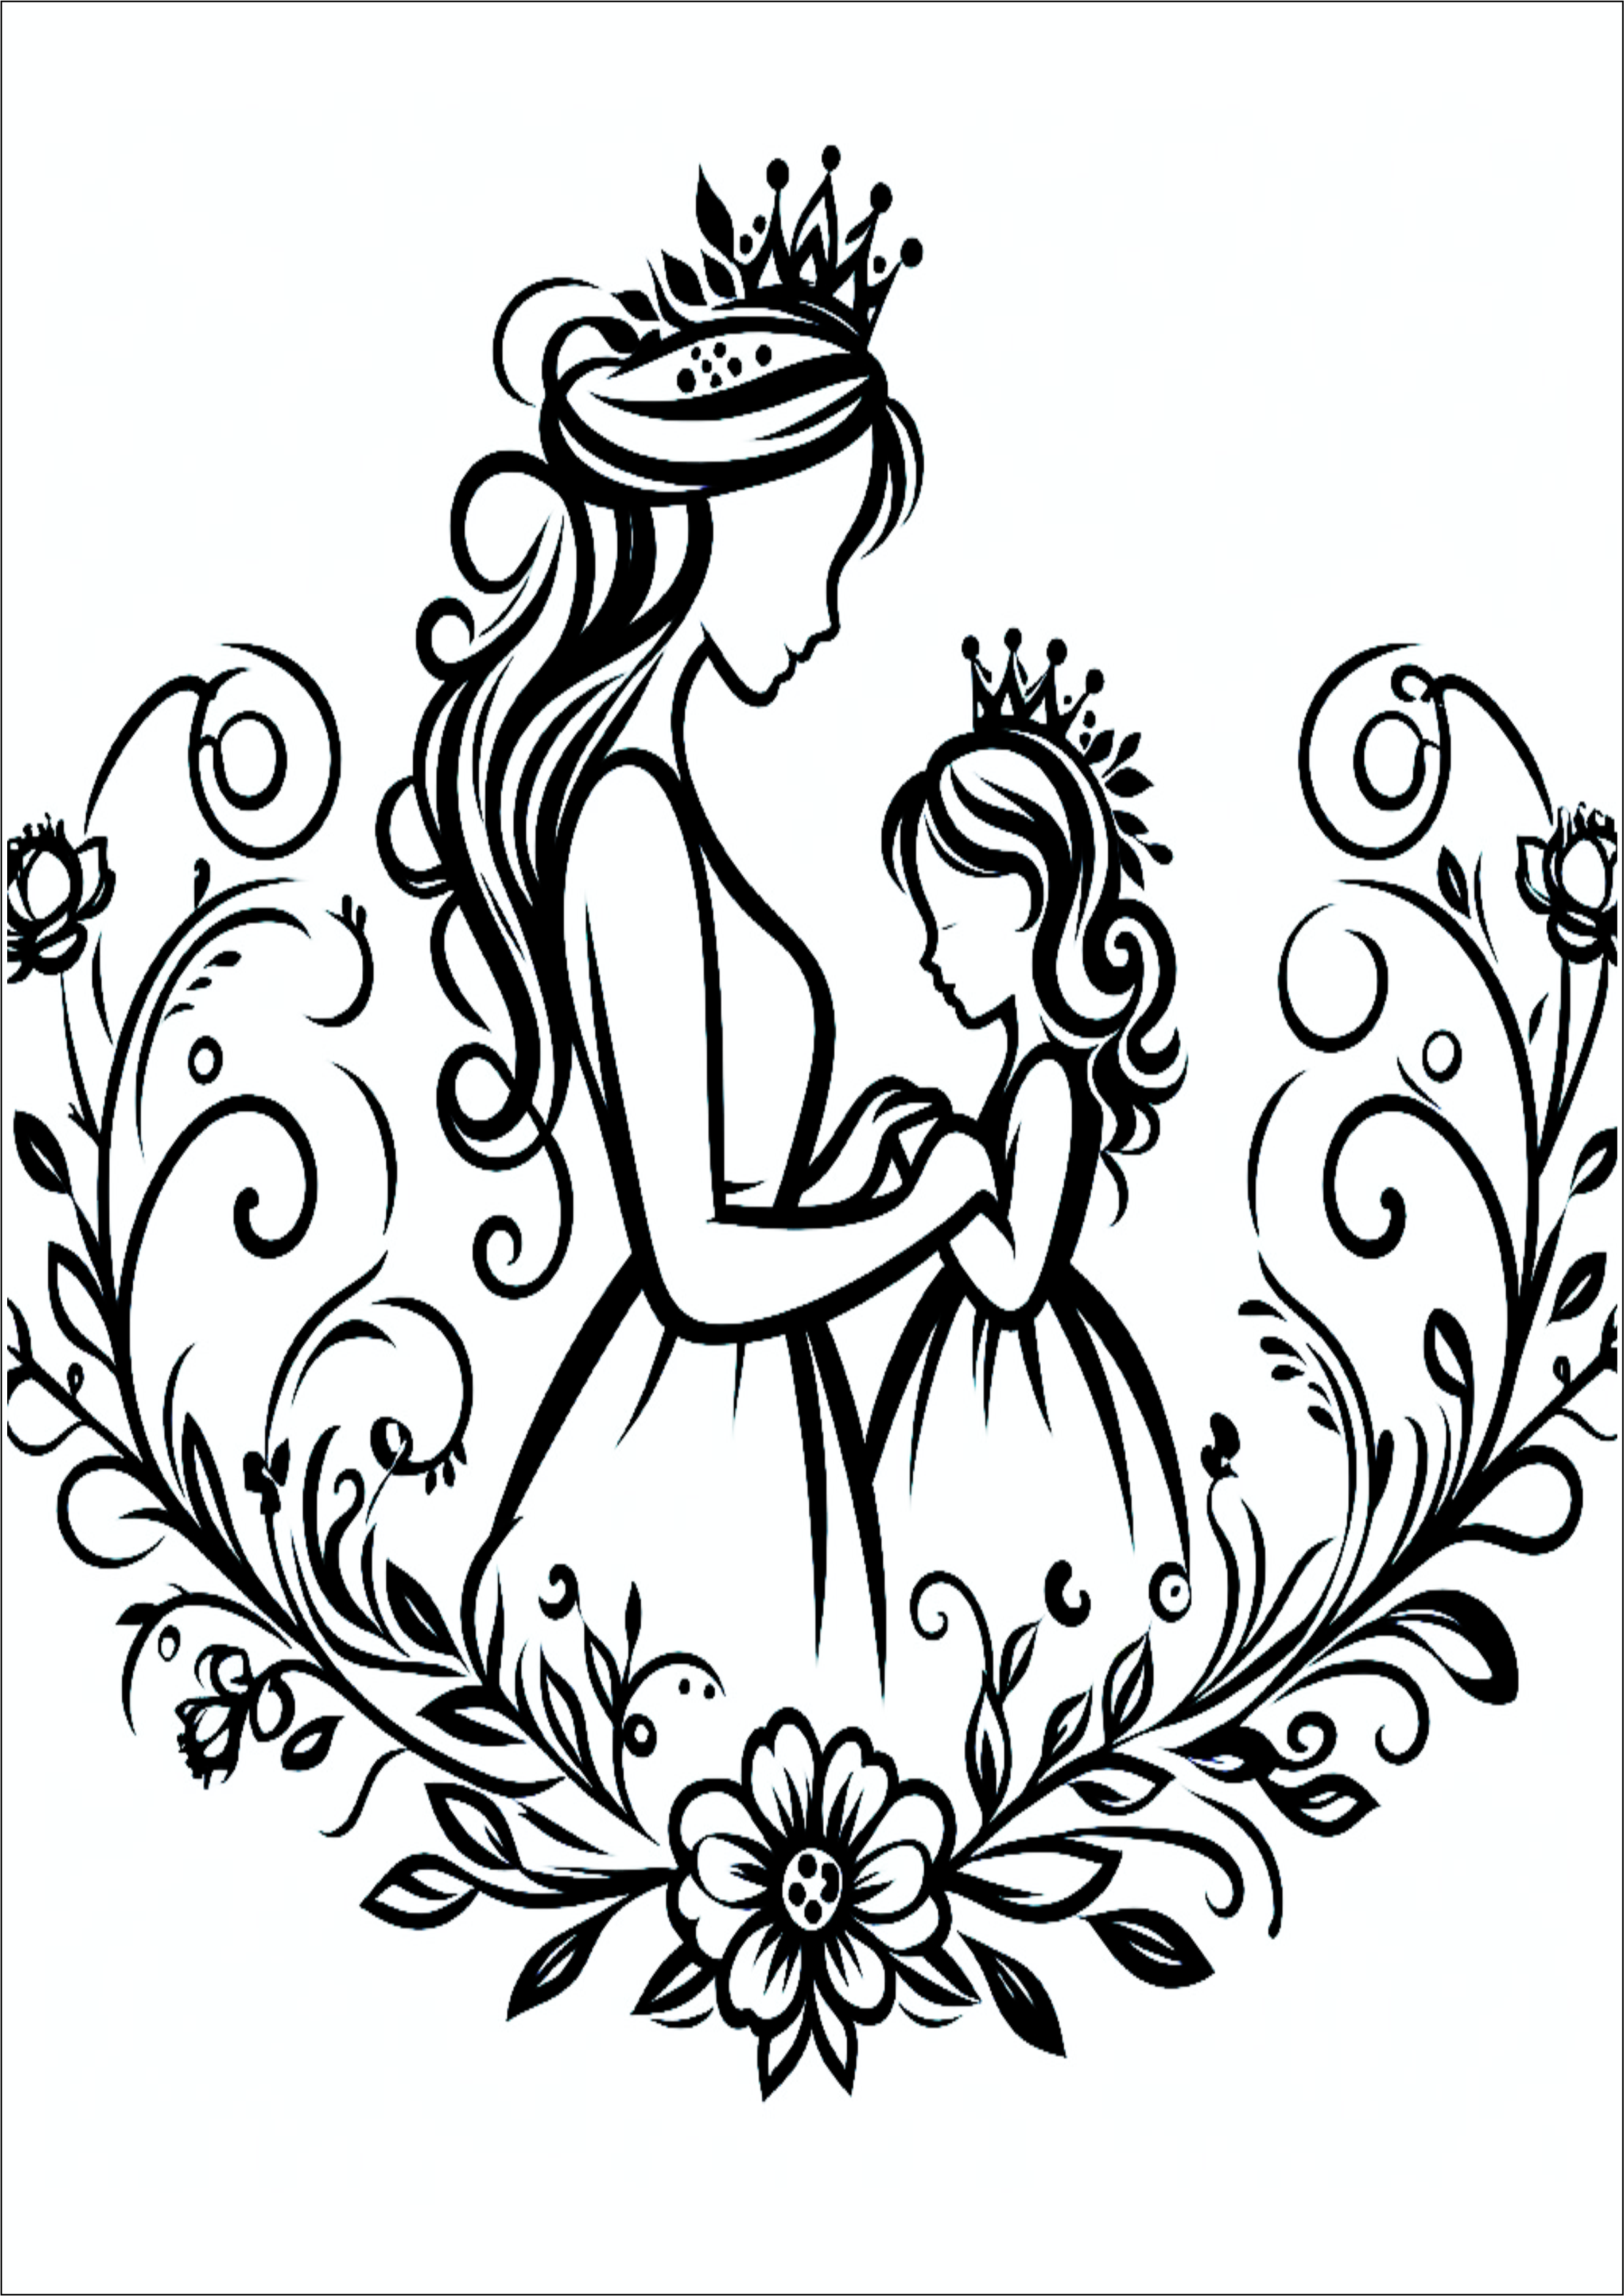 Dia das mães tatuagem desenho simples para imprimir princesas png